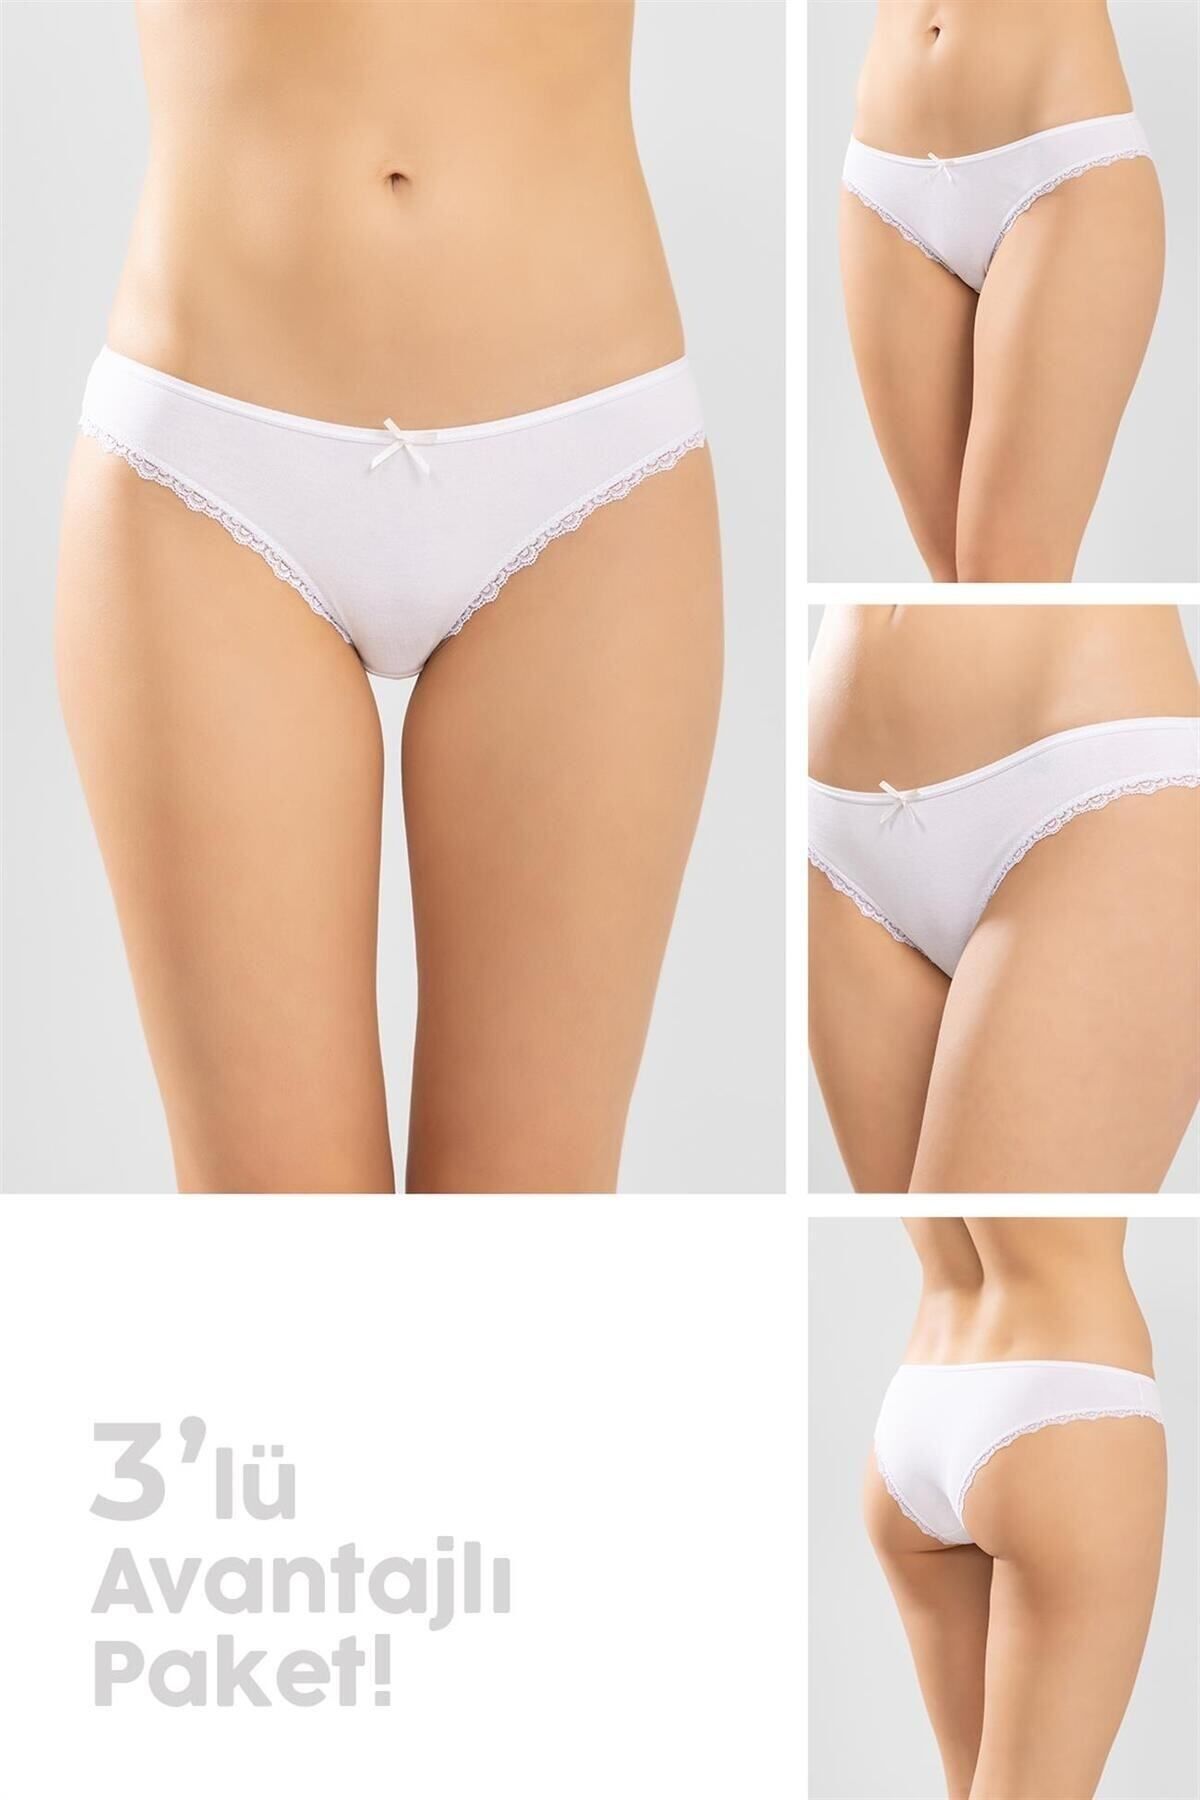 BAYKAR Klasik Pamuklu Kenarları Güpürlü Bikini Kesim Kadın Külot 3lü Paket Beyaz